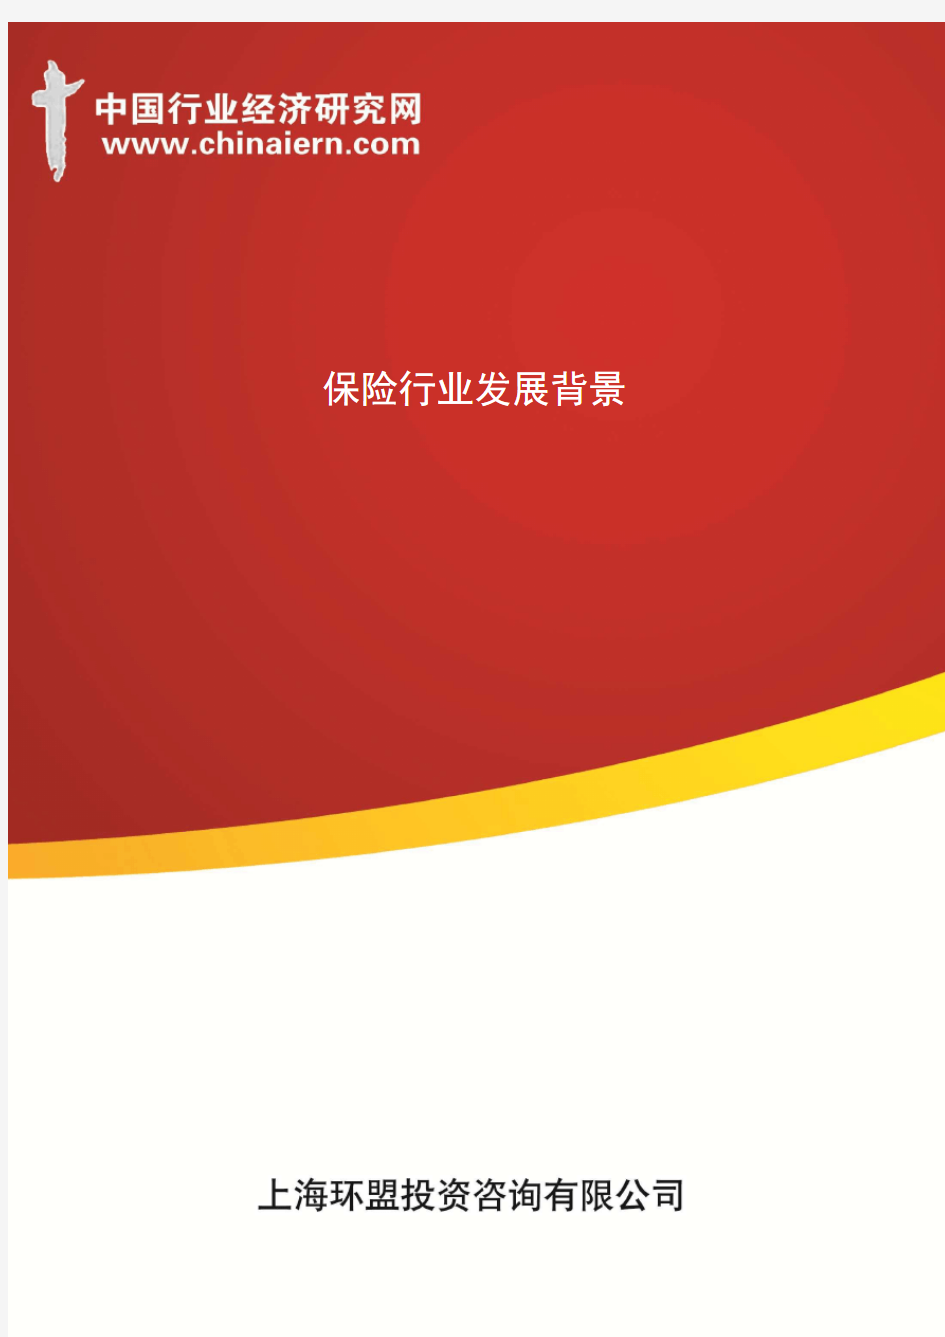 保险行业发展背景(上海环盟)